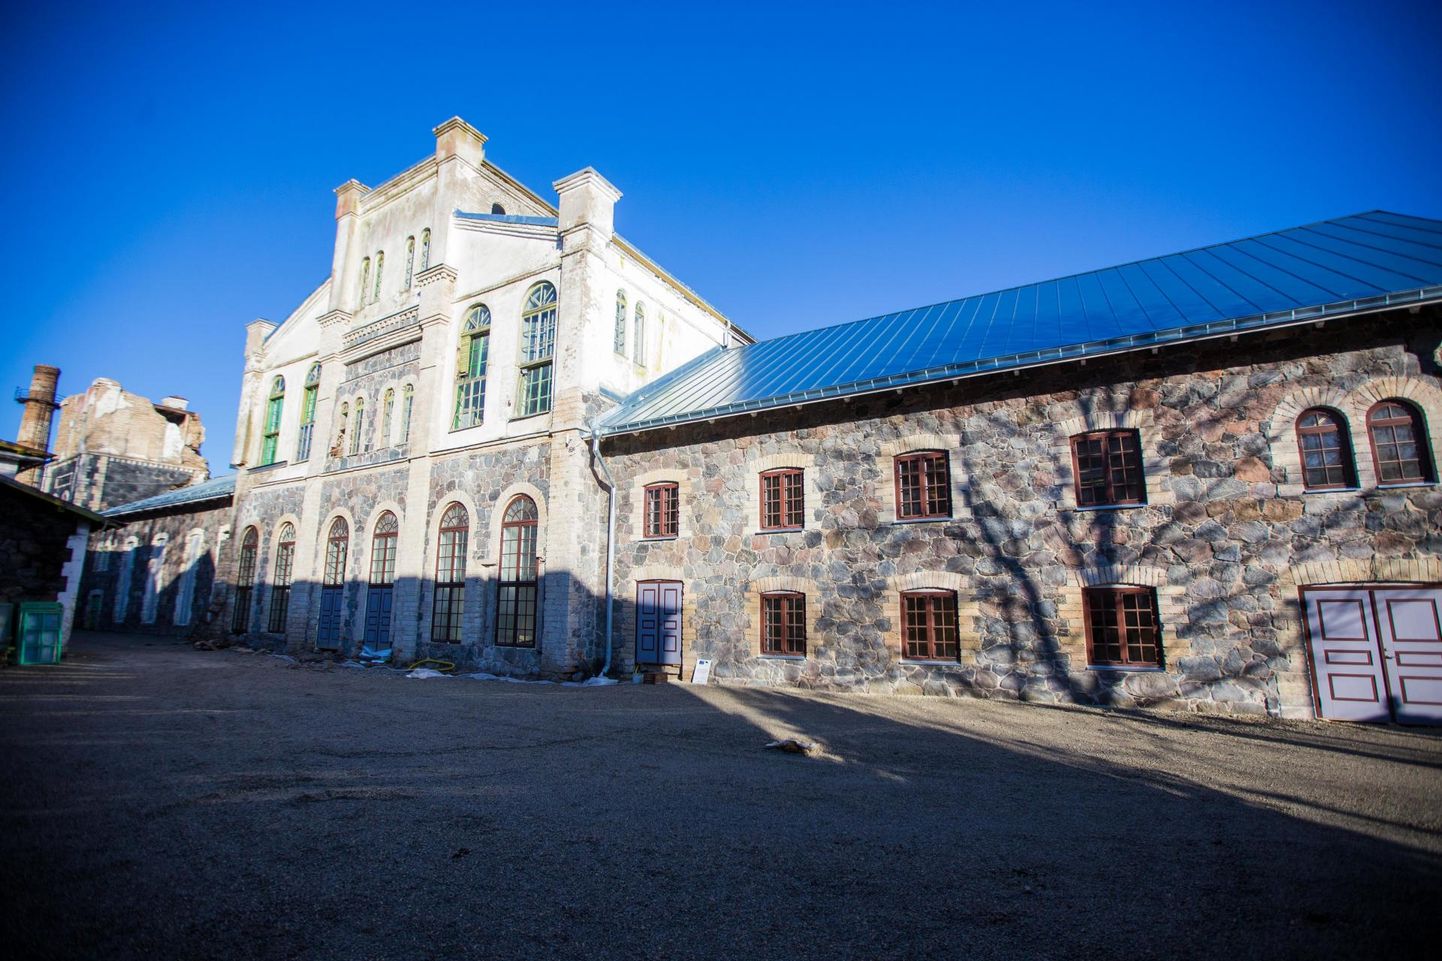 Mais taasavatakse Moe mõisa vanas viinaköögis ja piiritusevabrikus Eesti piiritusemuuseum koos külastuskeskusega.